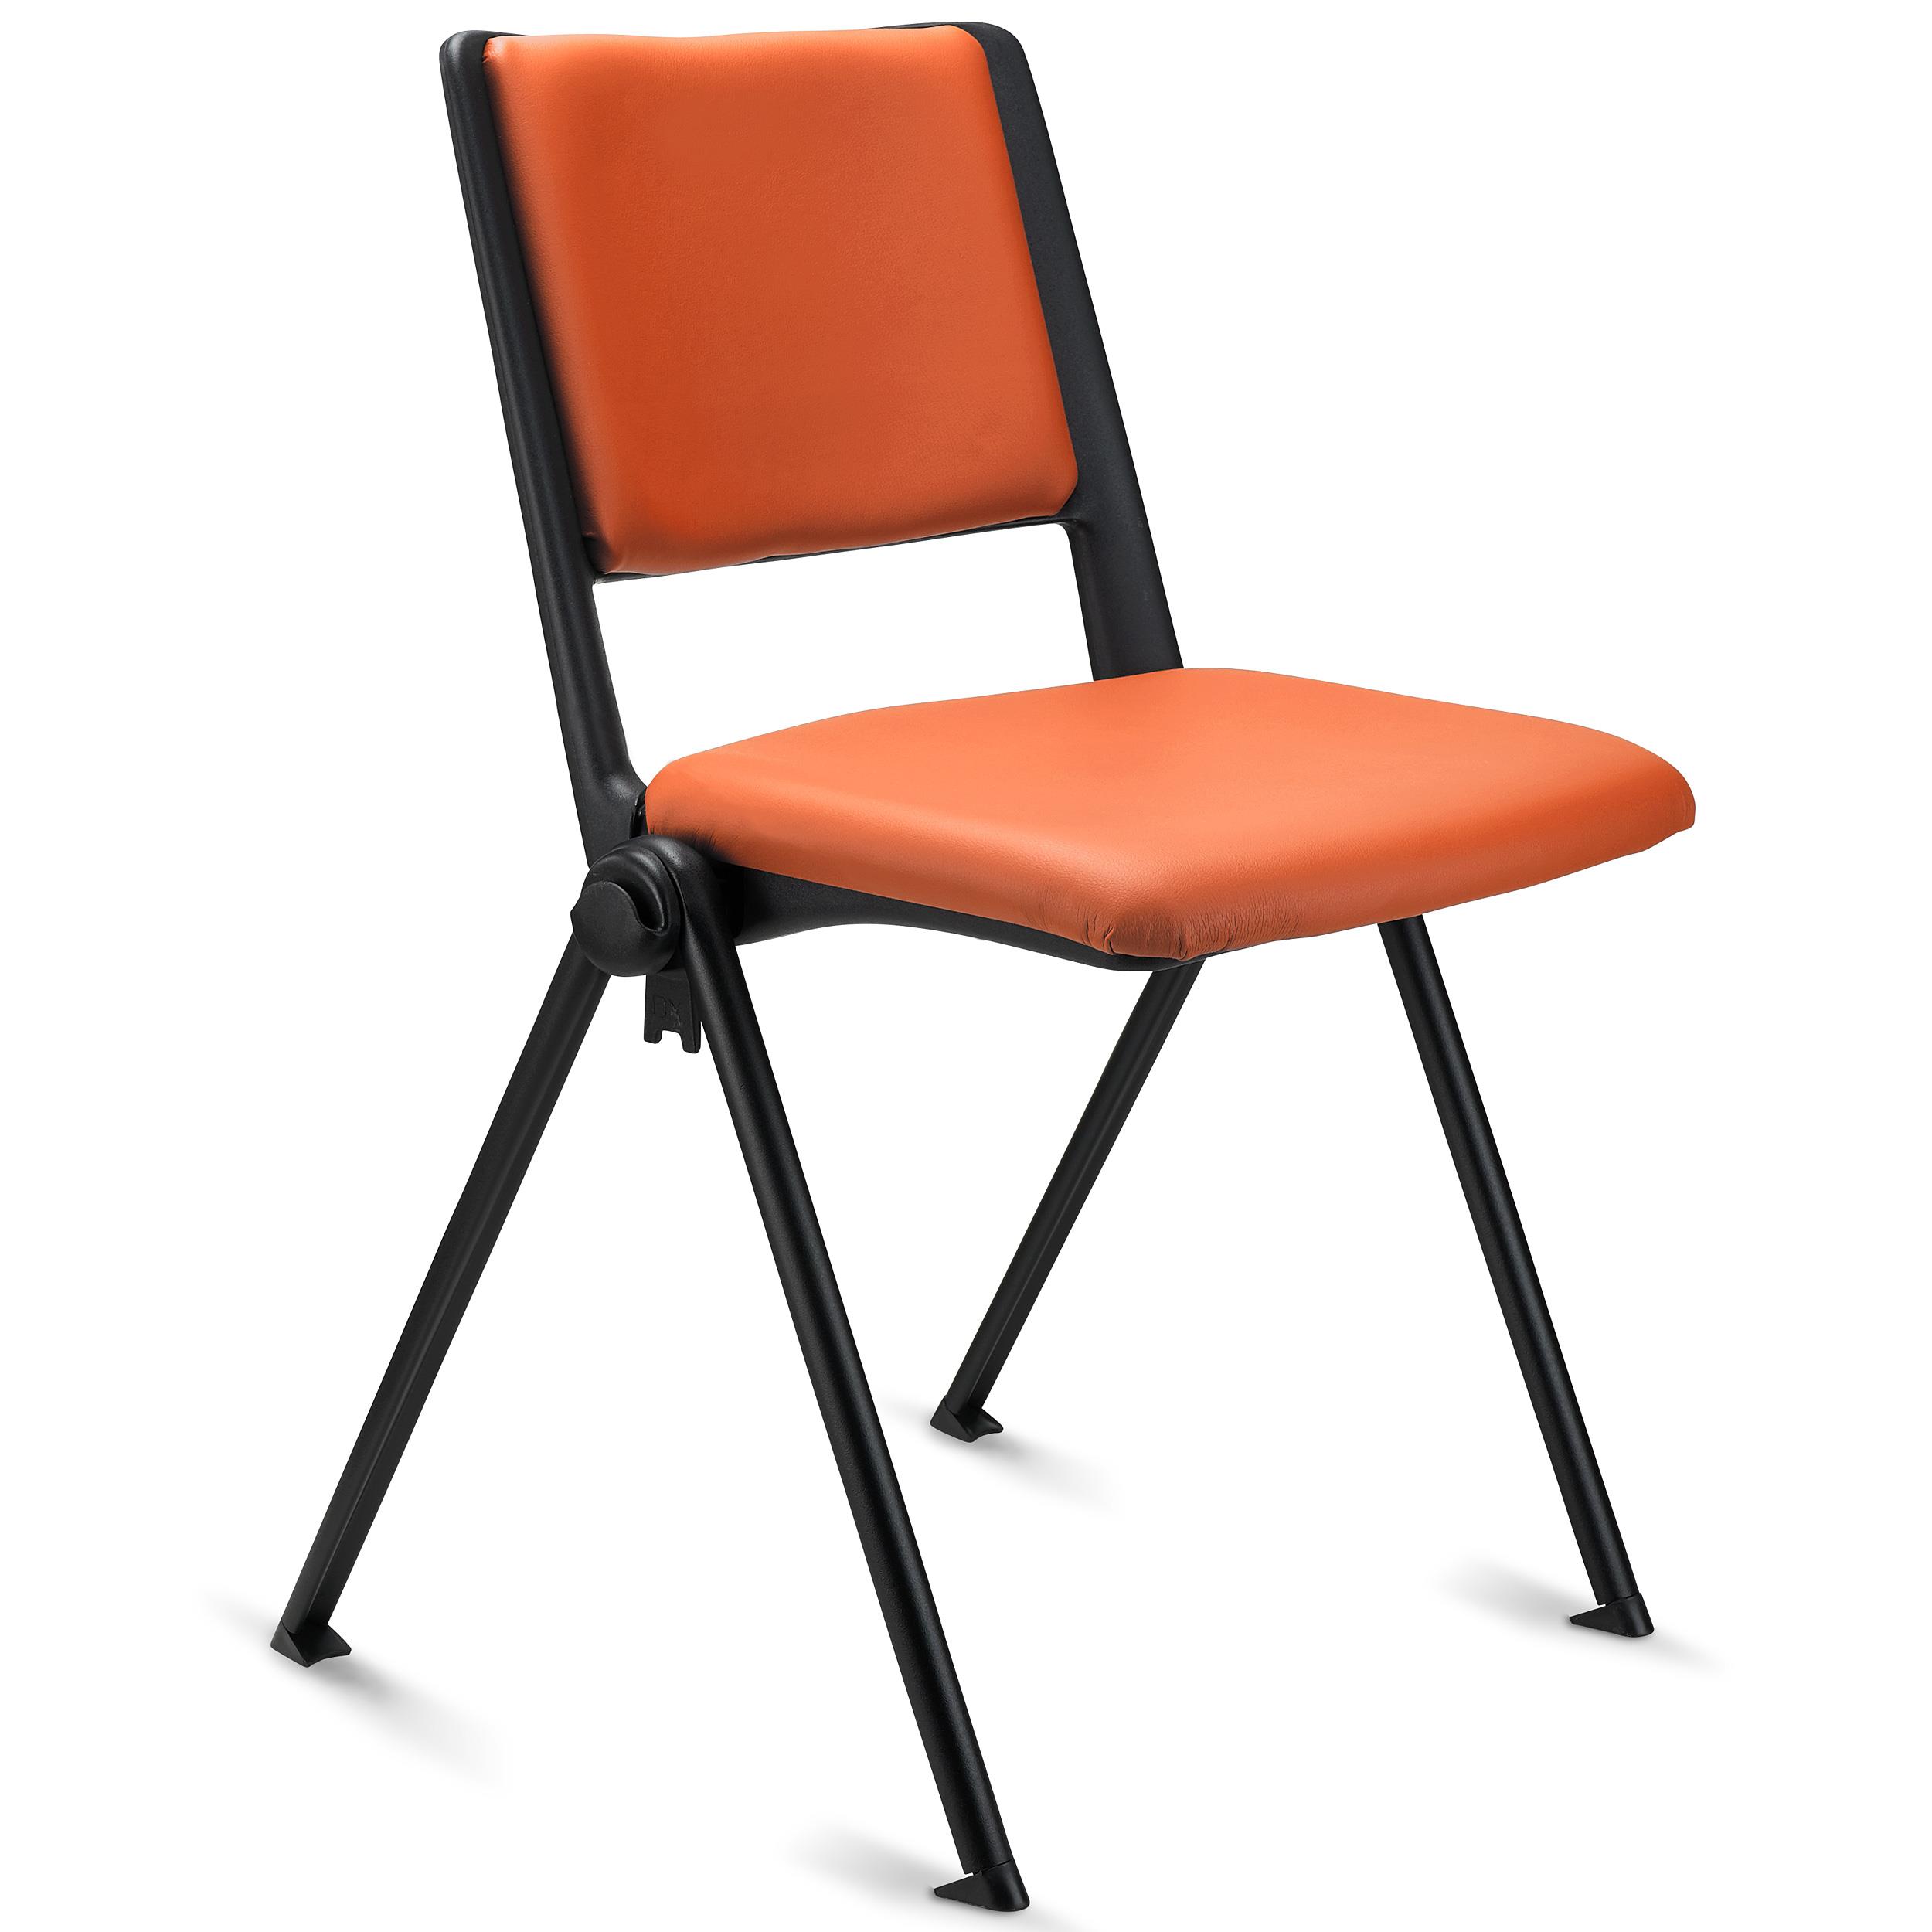 Konferenzstuhl CARINA, stapel- und reihenverbindbar, schwarzes Stahlgestell, Kunstleder Farbe Orange